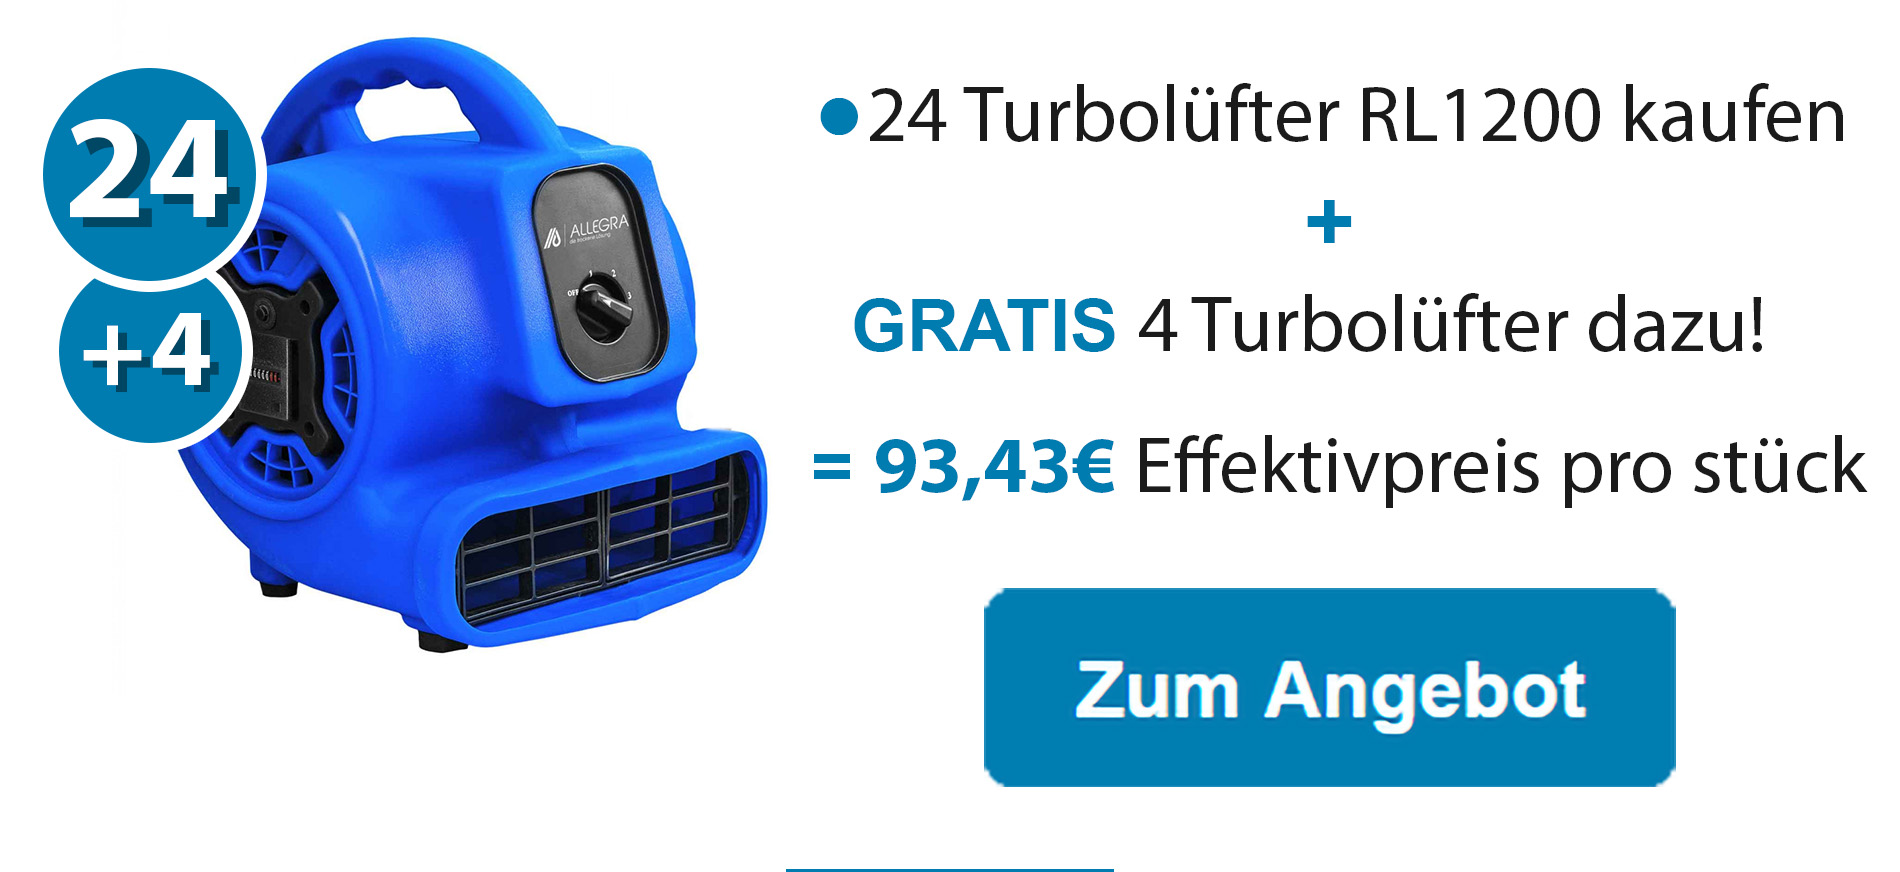 24 Turbolüfter RL1200 kaufen +4 GRATIS dazu!